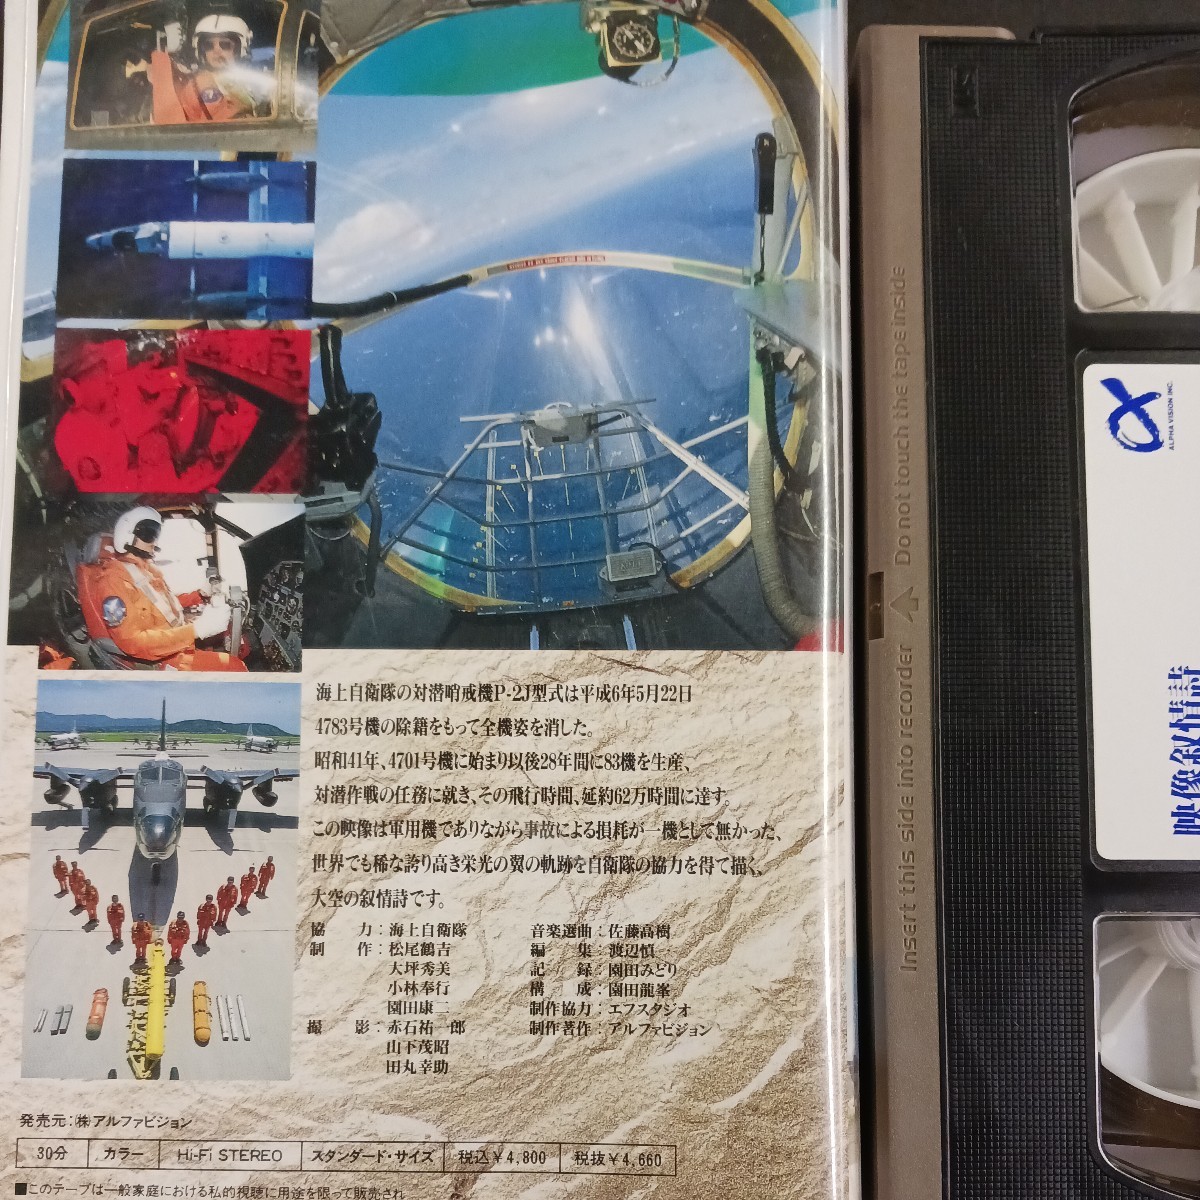 VHS_26】P-2J 映像抒情詩 栄光の翼 ビデオテープ 海自 対戦哨戒機_画像2